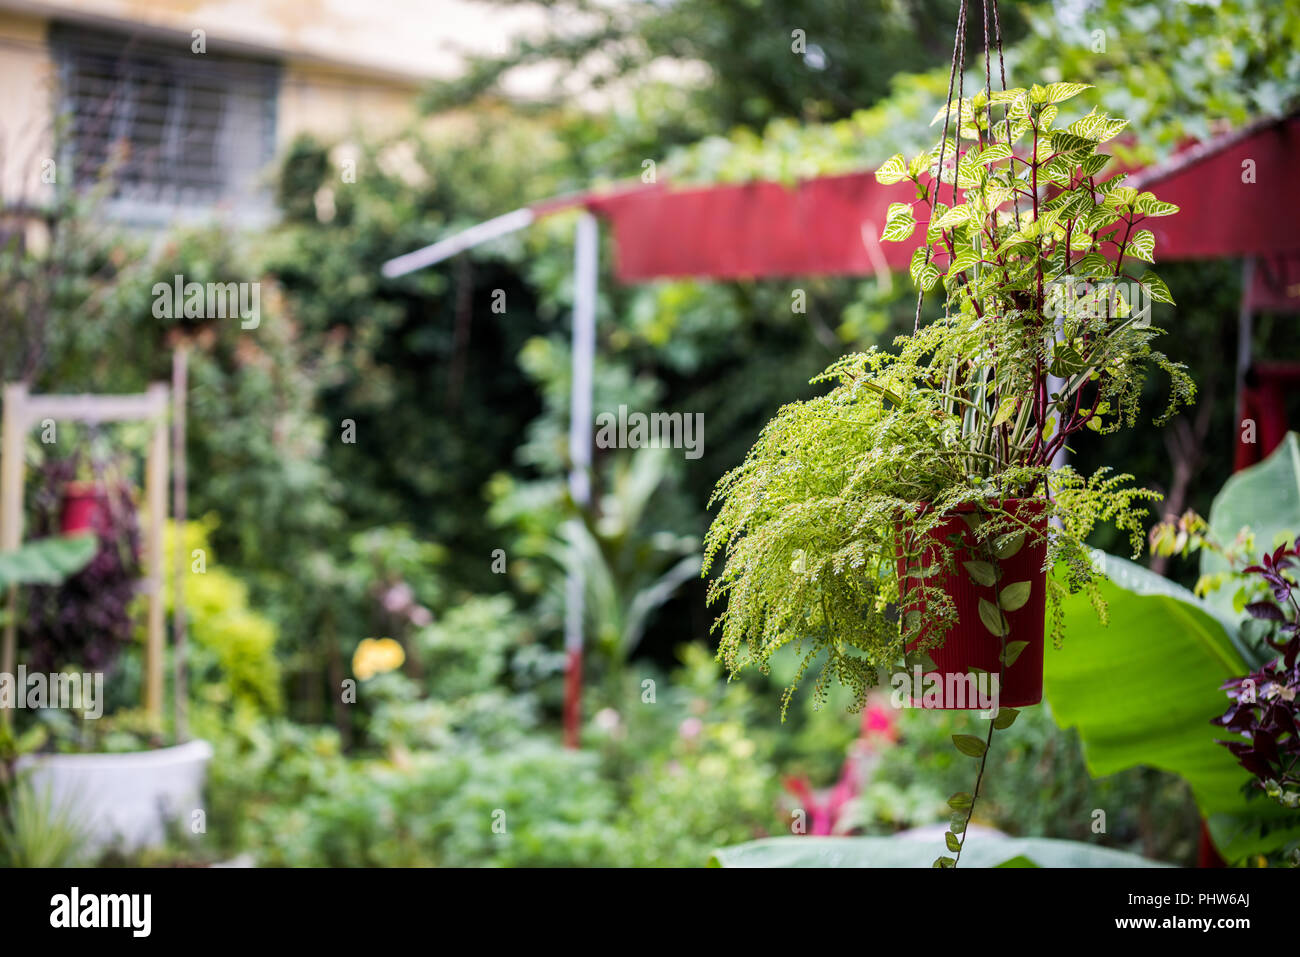 Pentola di piante ornamentali appesi in giardino per la decorazione Foto Stock